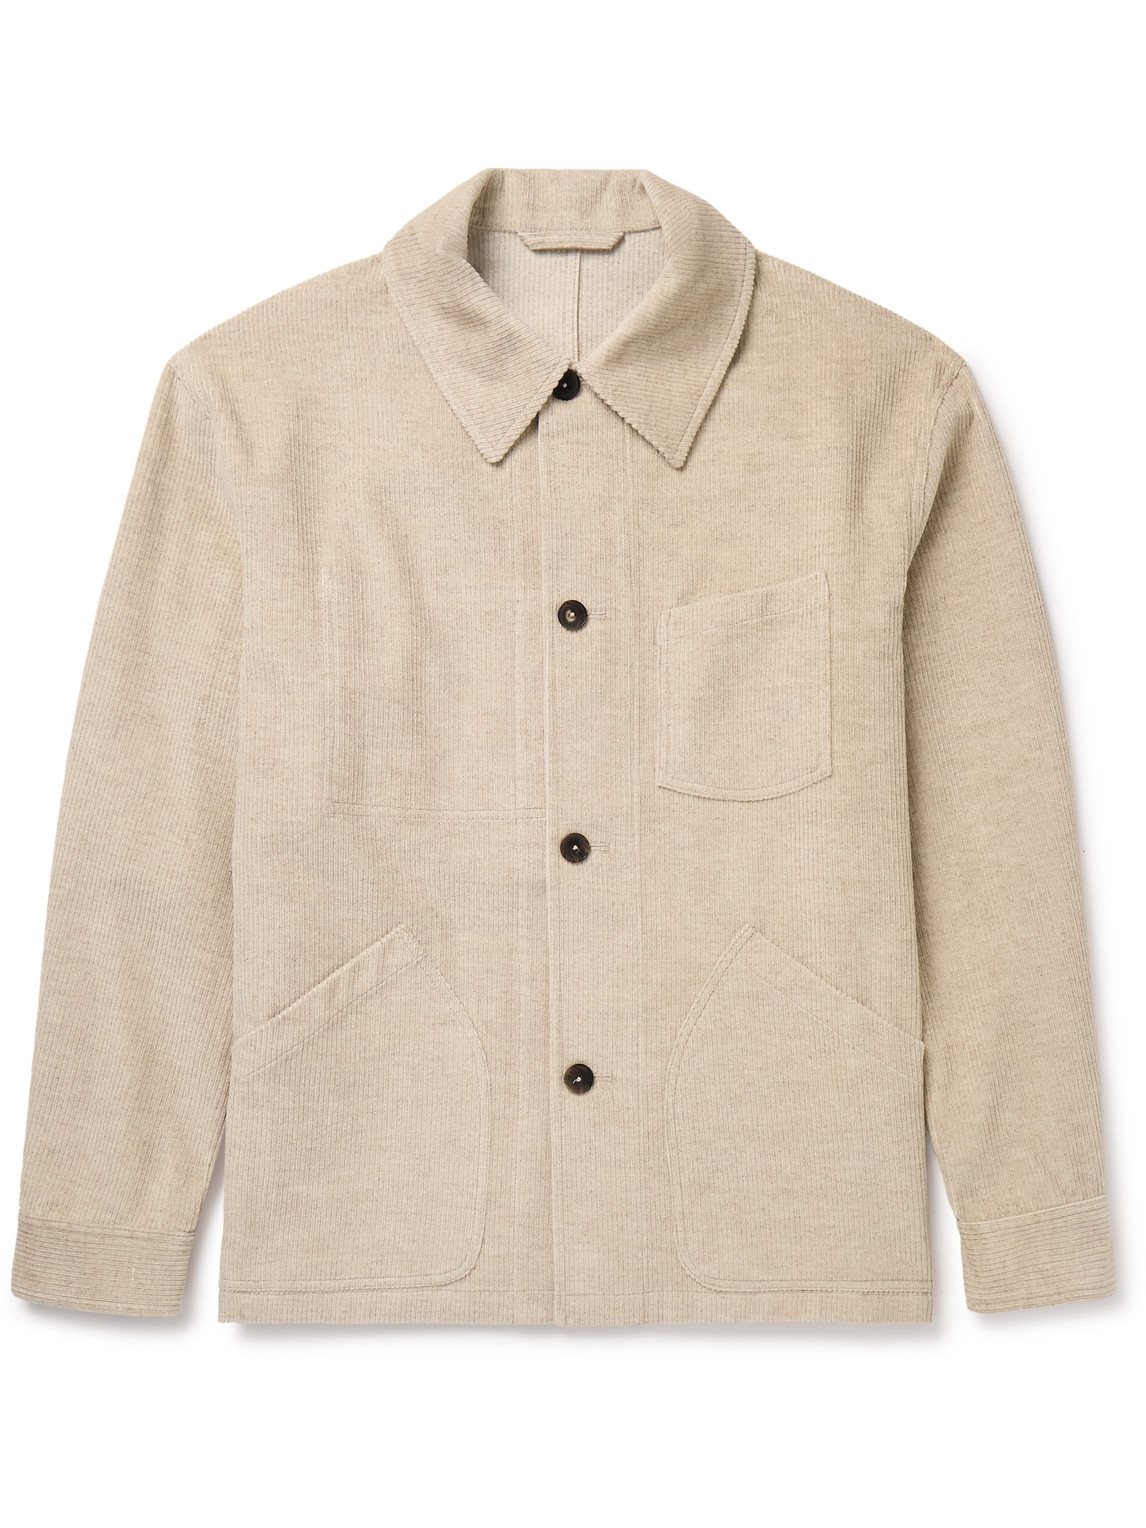 De Bonne Facture Maquignon Cotton And Linen-blend Corduroy Overshirt In Neutrals